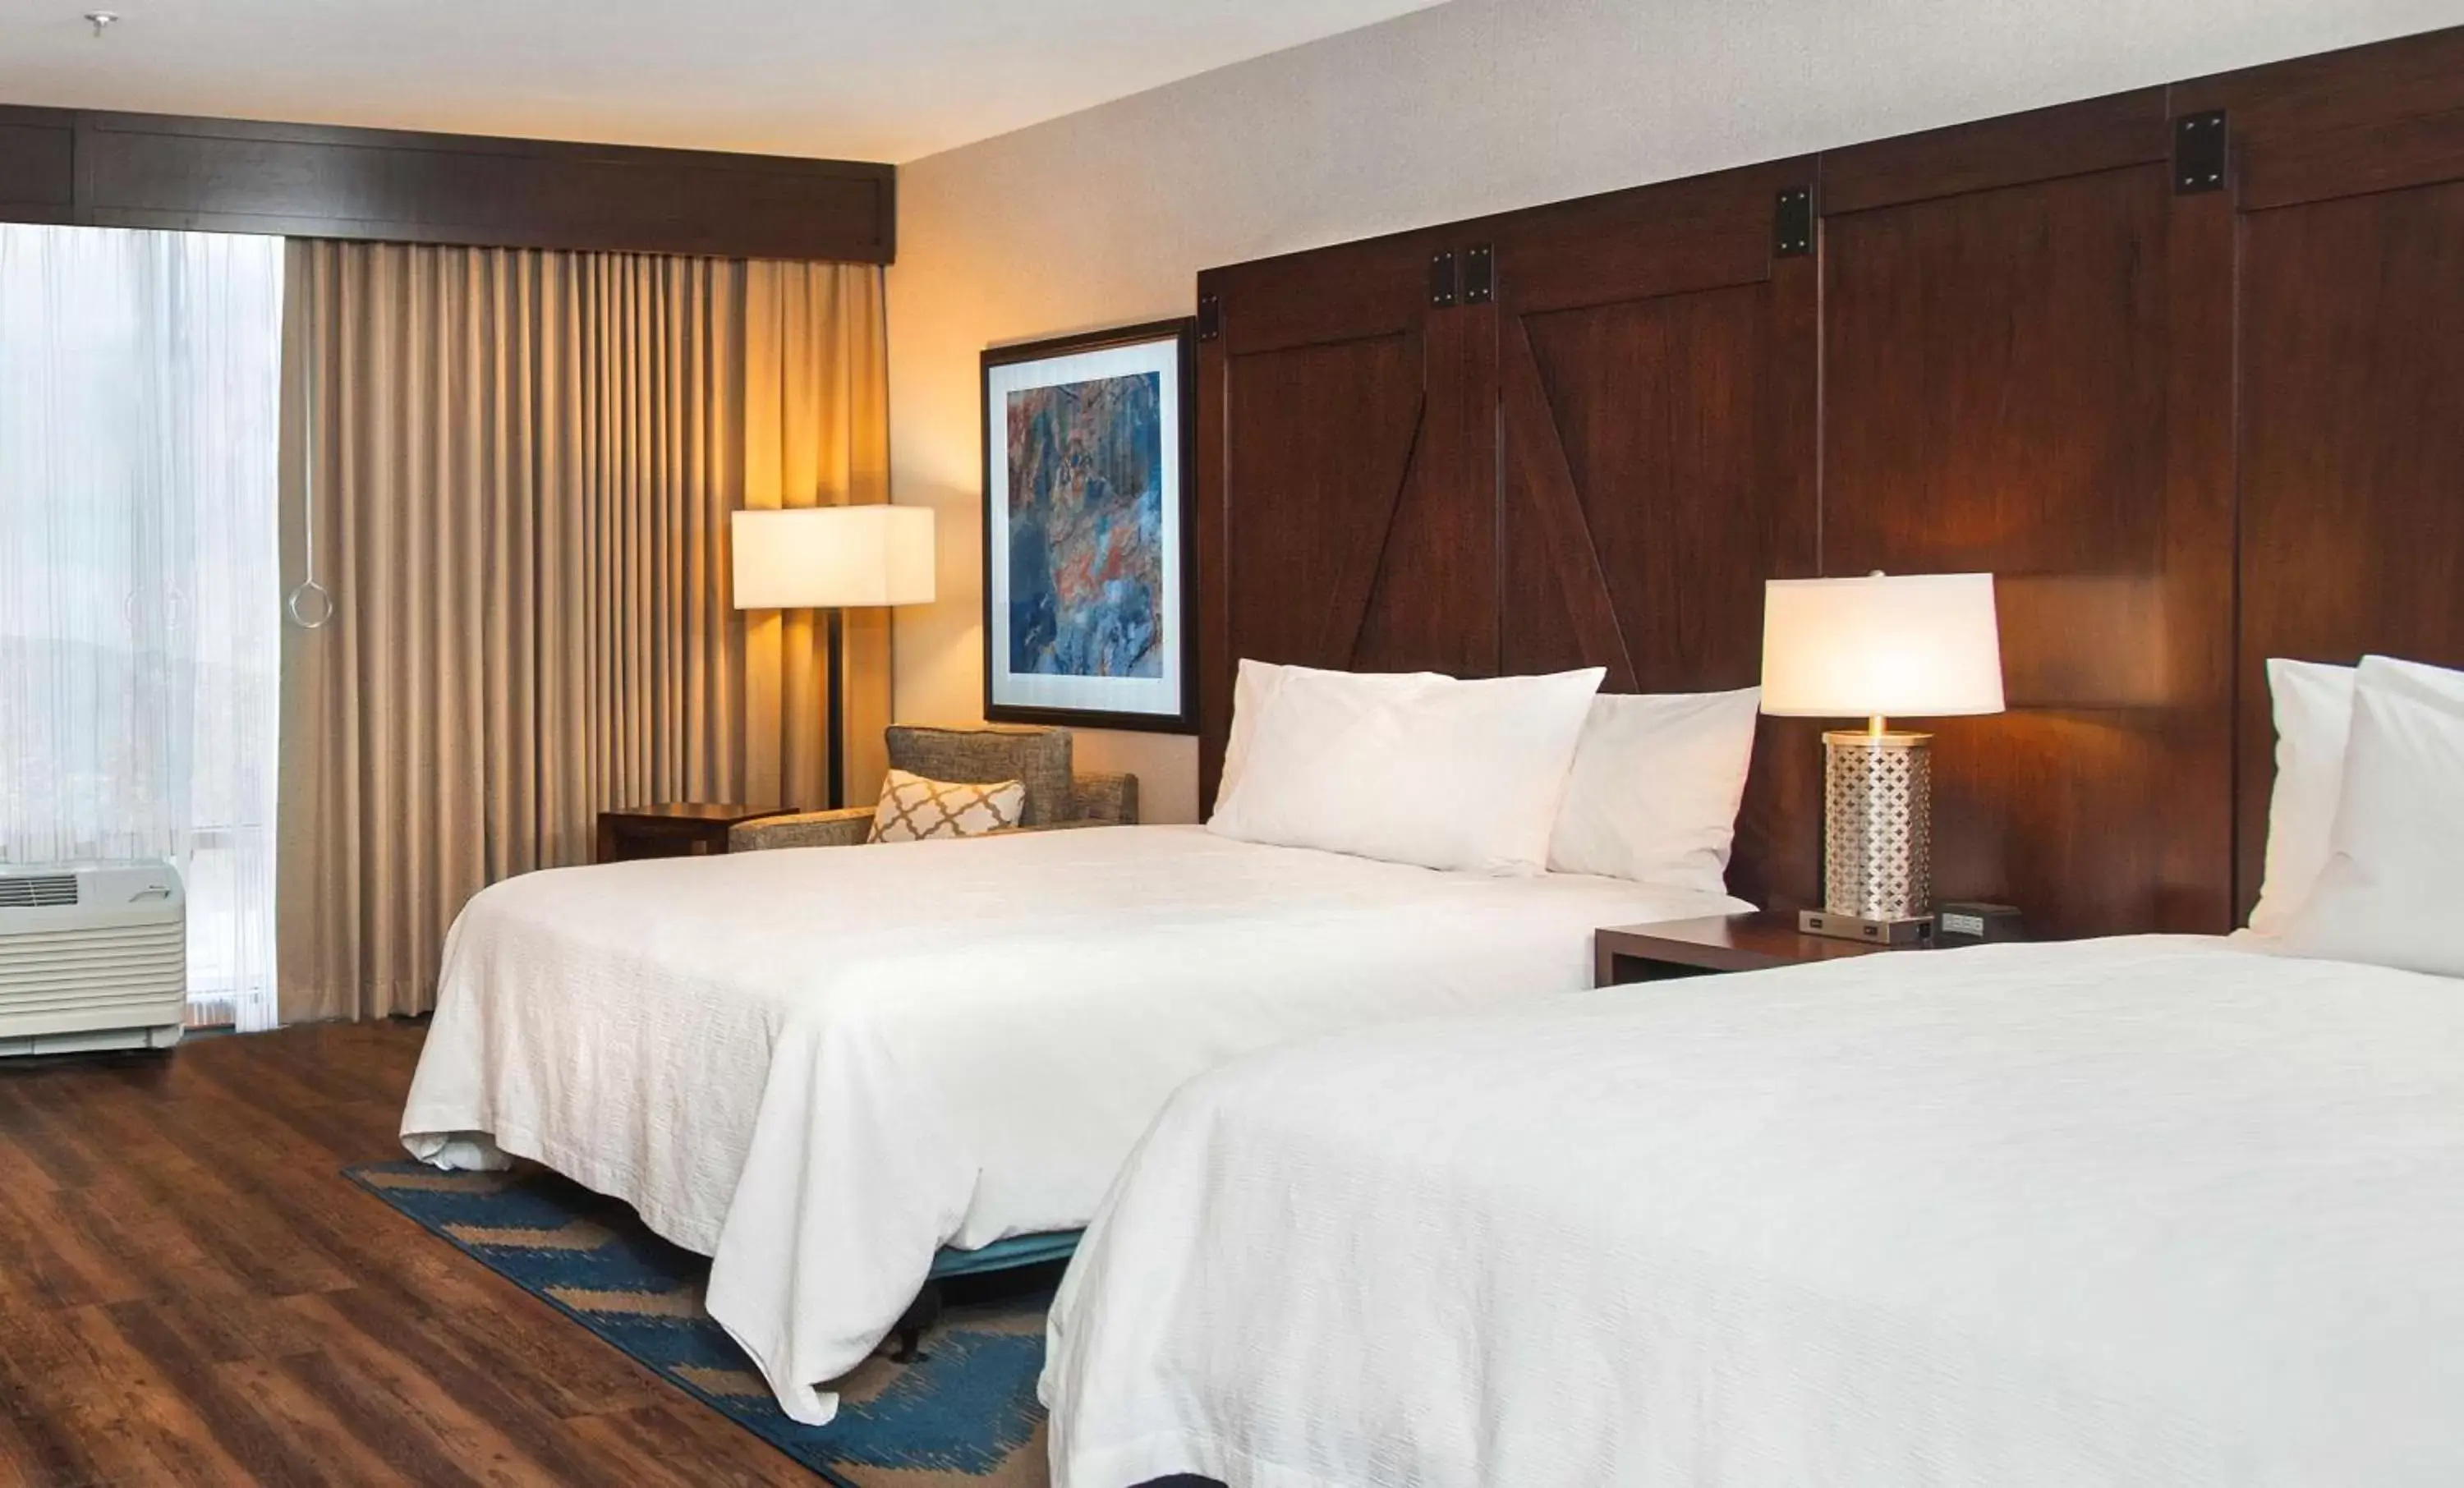 Premium Queen Room with Two Queen Beds in Hilton Garden Inn Burbank Downtown